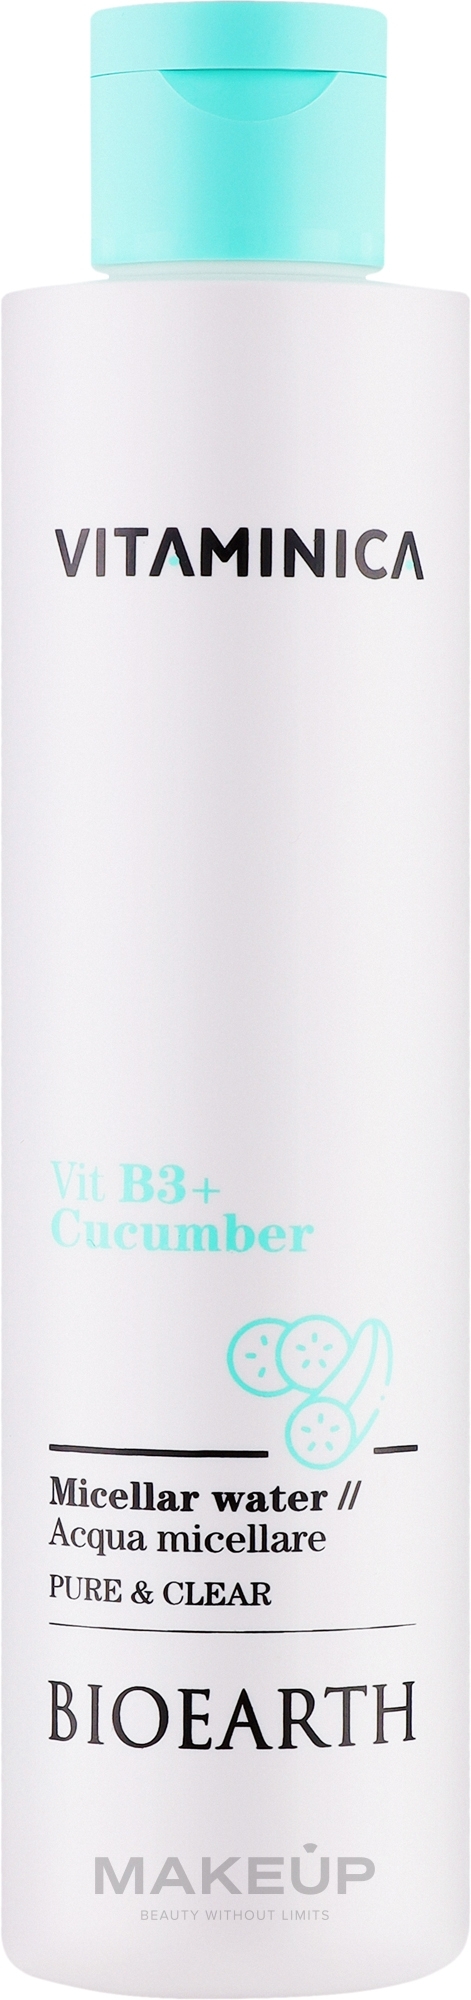 Міцелярна вода для всіх типів шкіри - Bioearth Vitaminica Vit B3 + Cucumber Micellar Water — фото 200ml